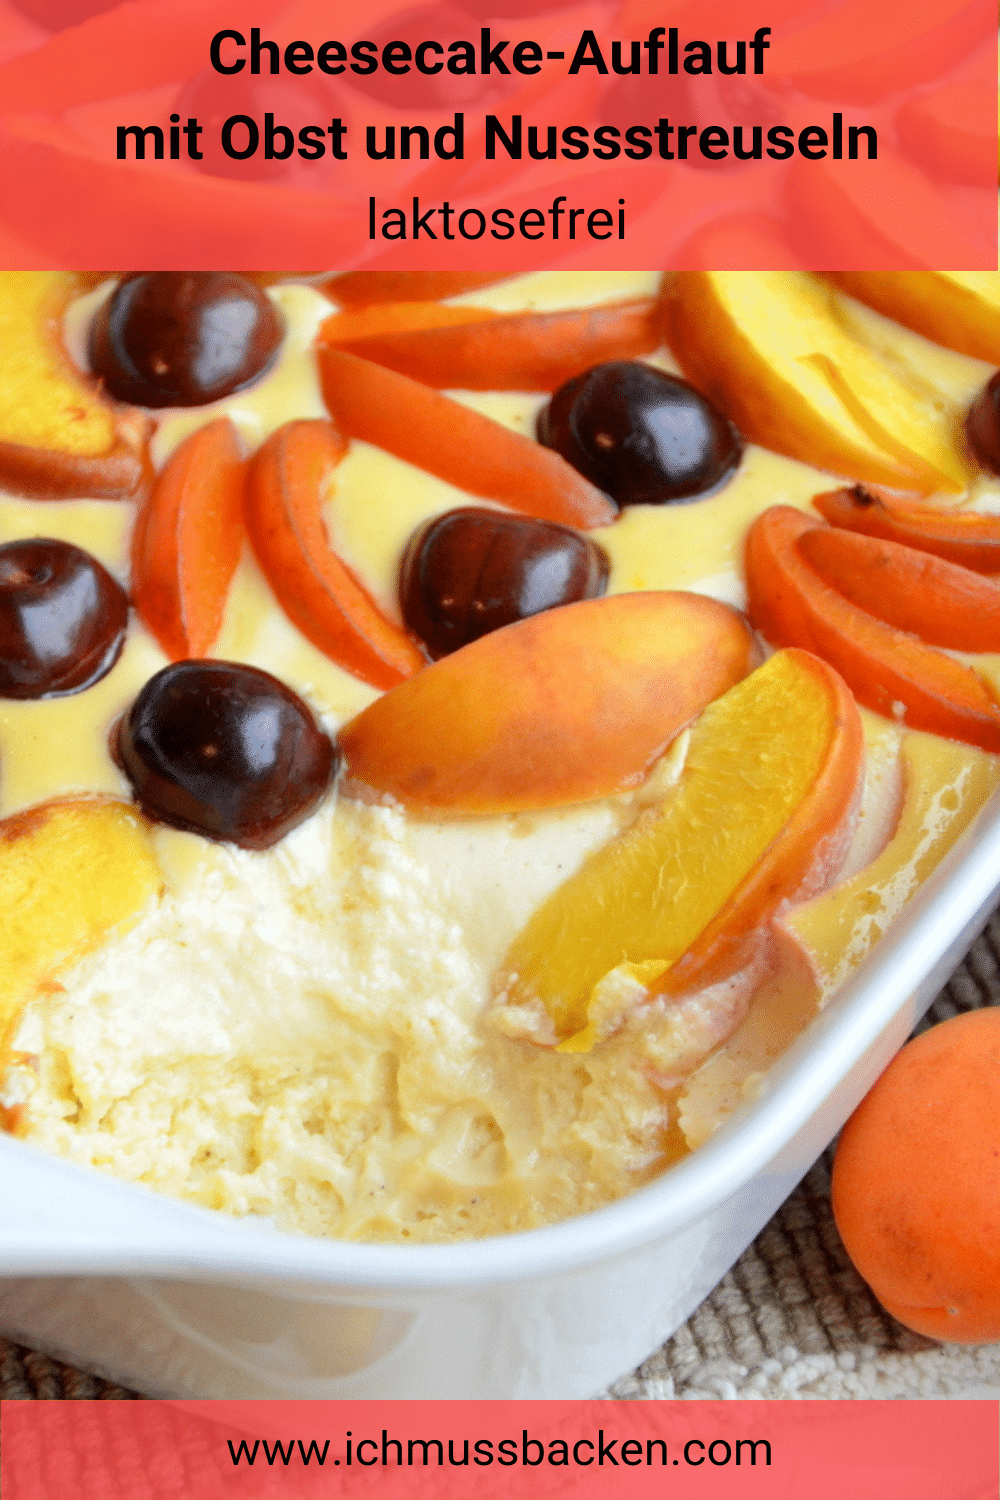 Cheesecake-Auflauf mit Obst und Nussstreuseln